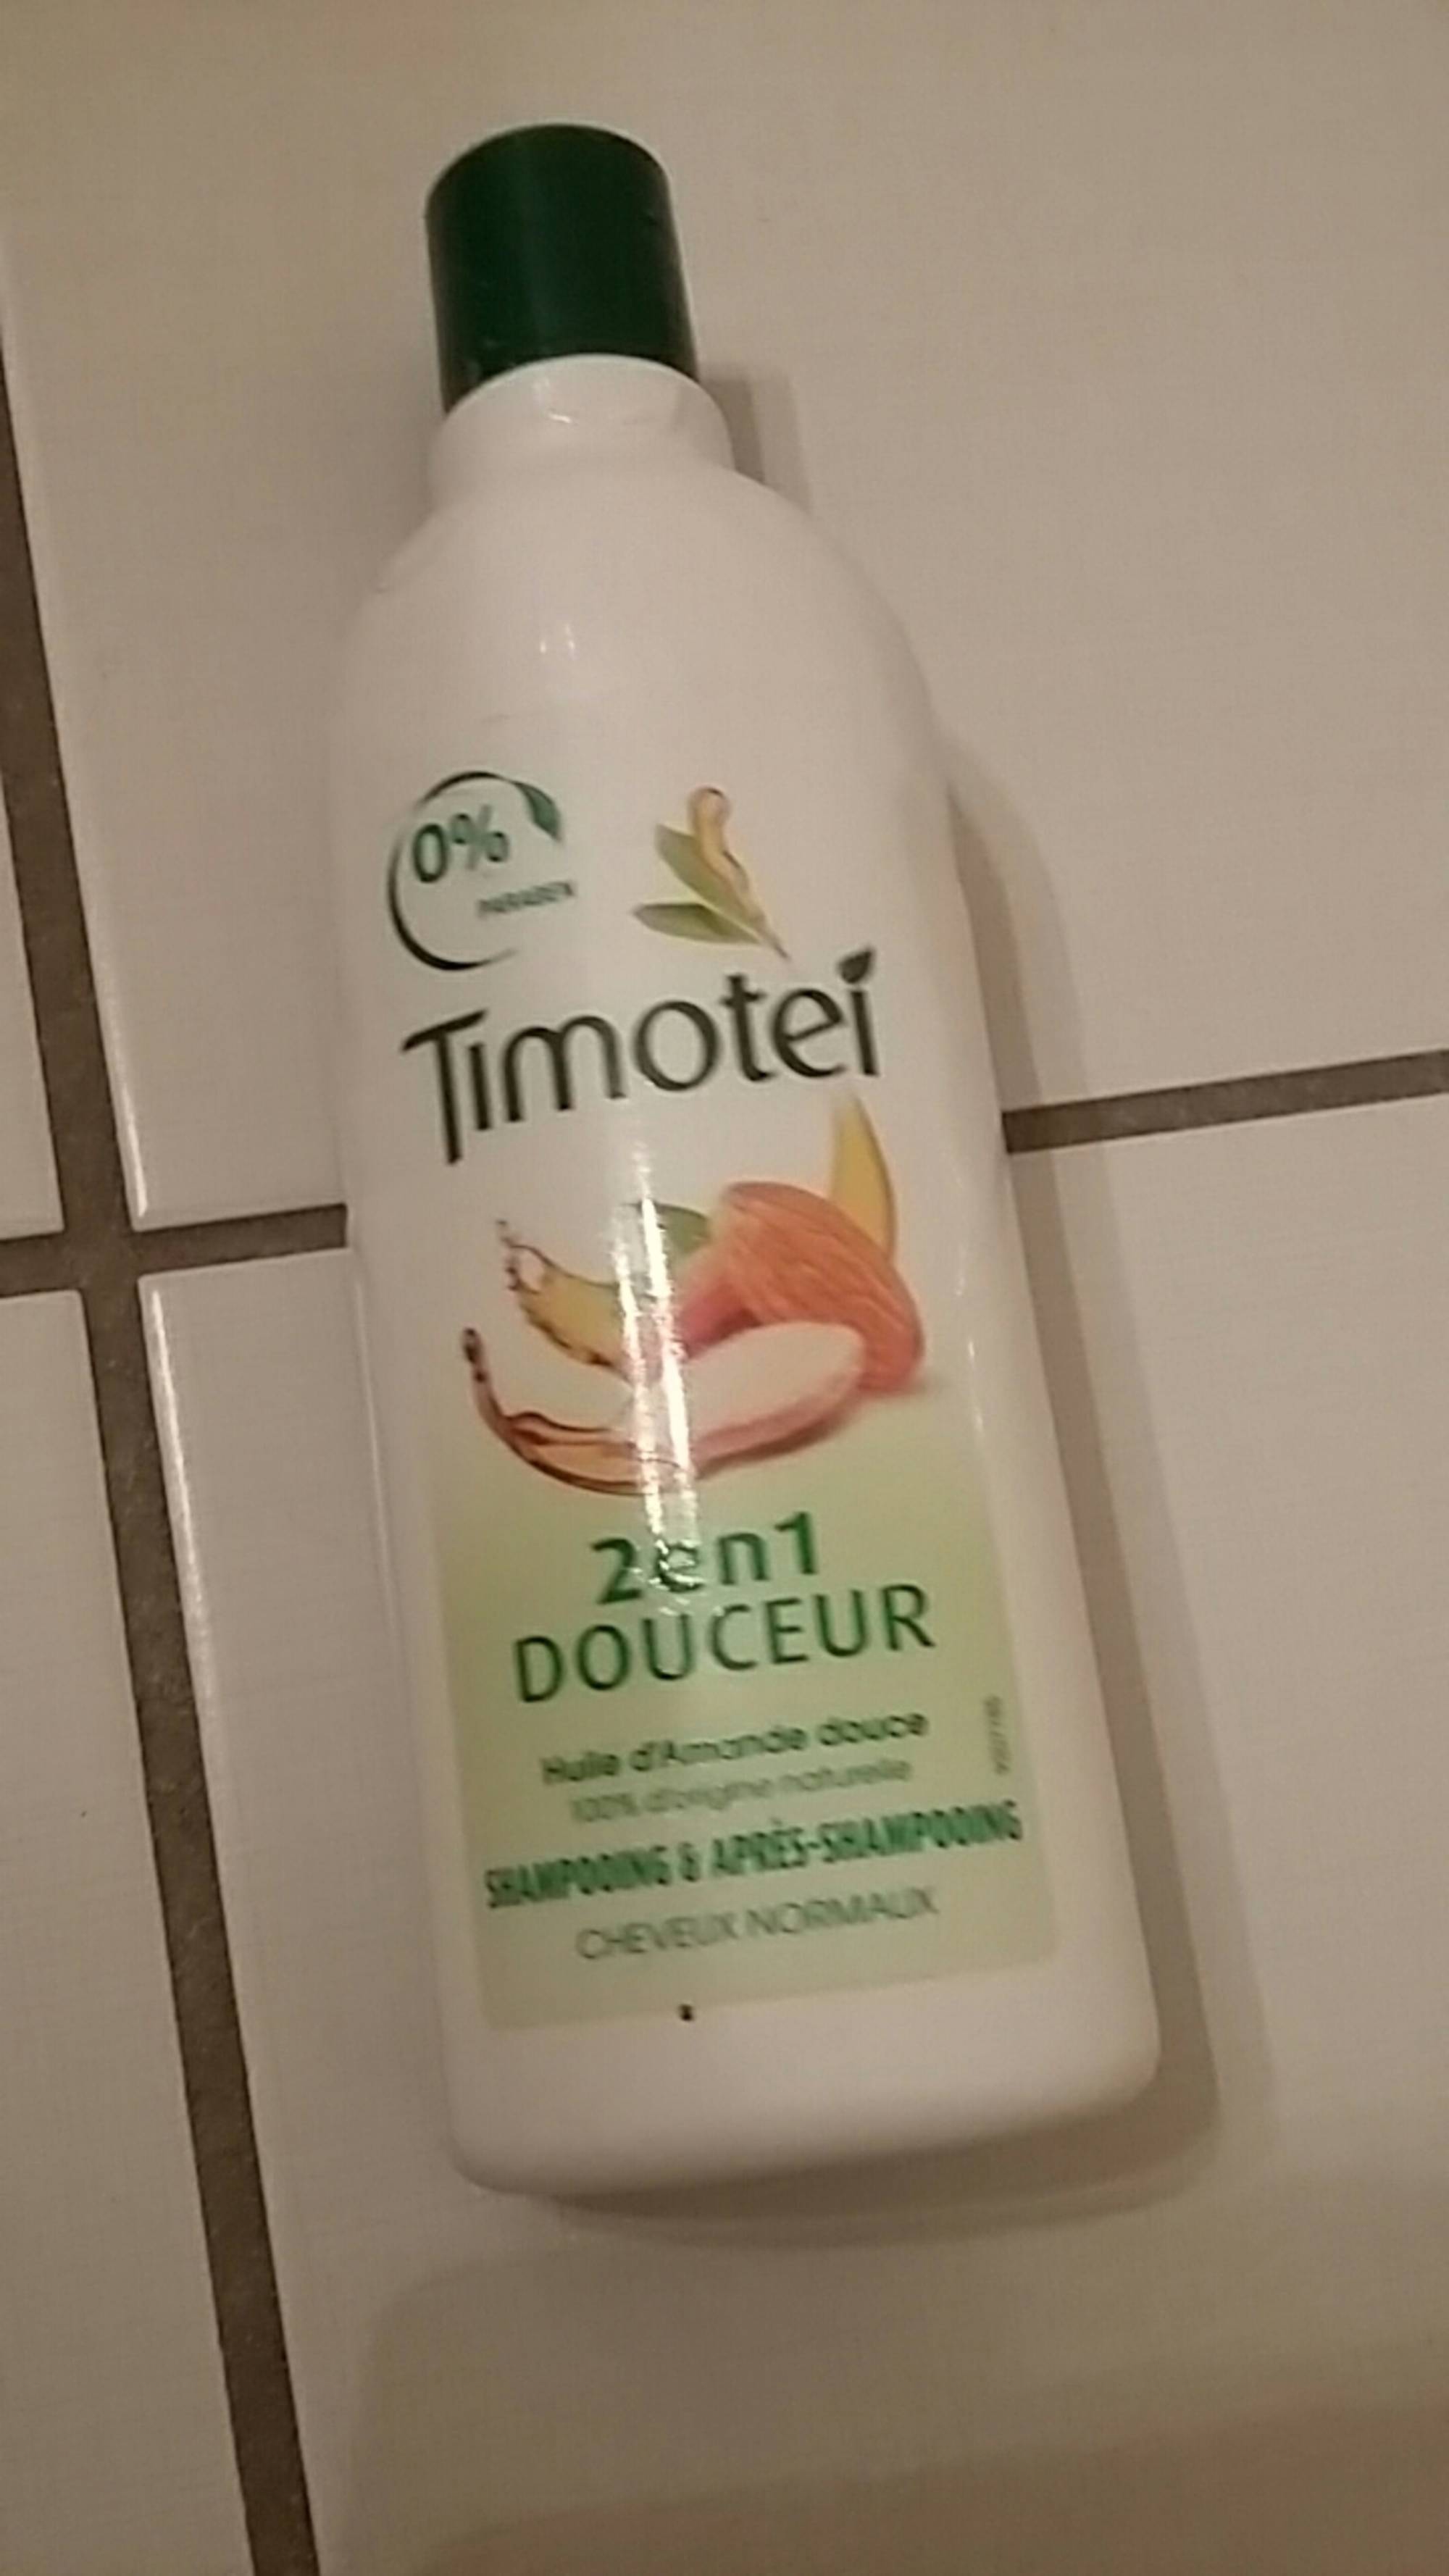 TIMOTEI - Shampooing et après shampooing 2 en 1 douceur